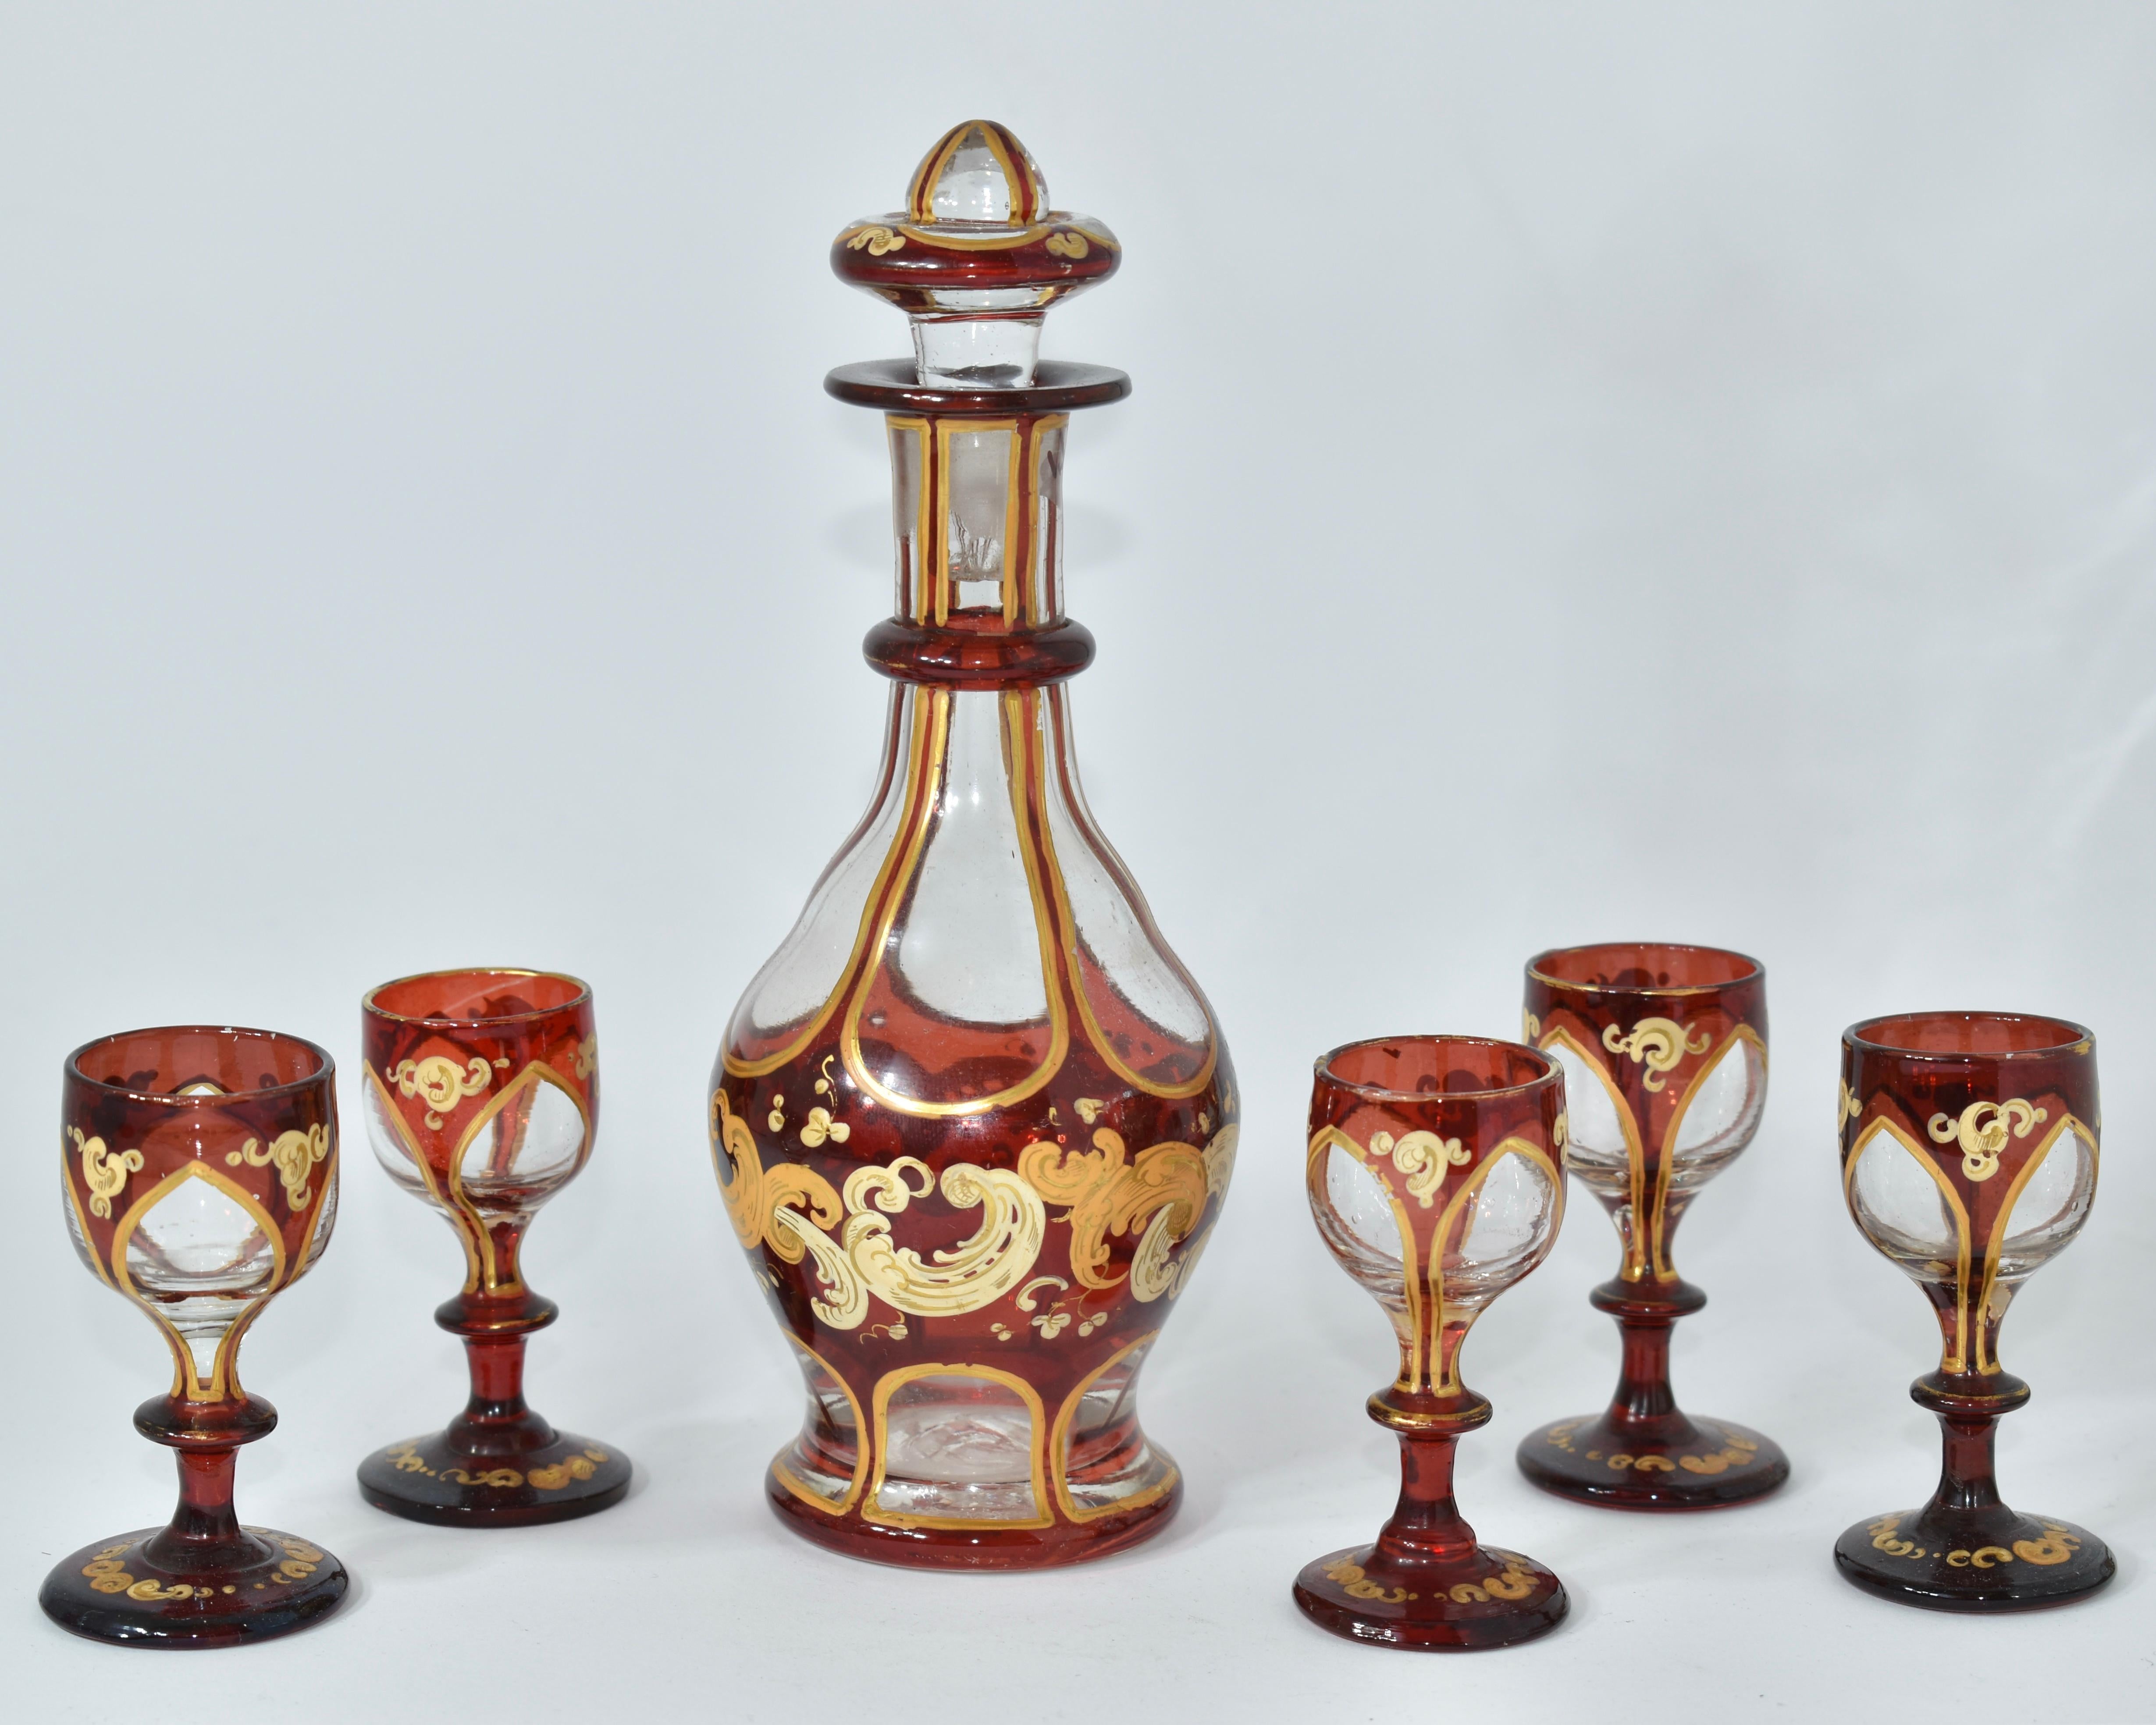 Schönes Likör-Set, Dekanter mit 5 passenden Gläsern

Böhmisches Klarglas und rubinrotes Glas 

Rundum reich verziert mit vergoldeten Emaille-Rollen und vergoldeten Highlights

Bohemia, 19. Jahrhundert